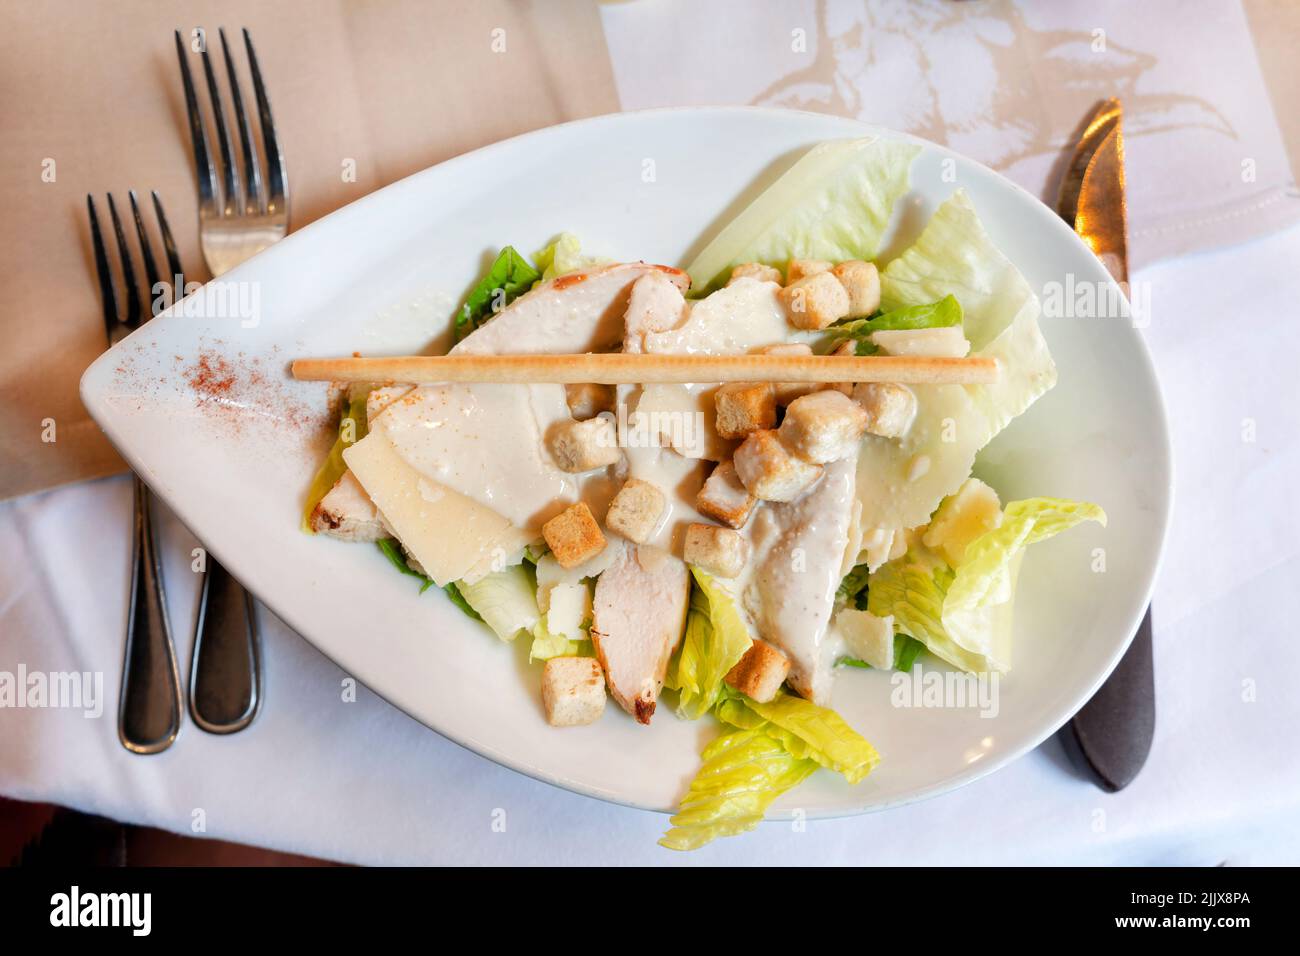 Une salade César classique, joliment présentée, servie à une table de restaurant. La salade est recouverte d'une sauce crémeuse et de croûtons Banque D'Images